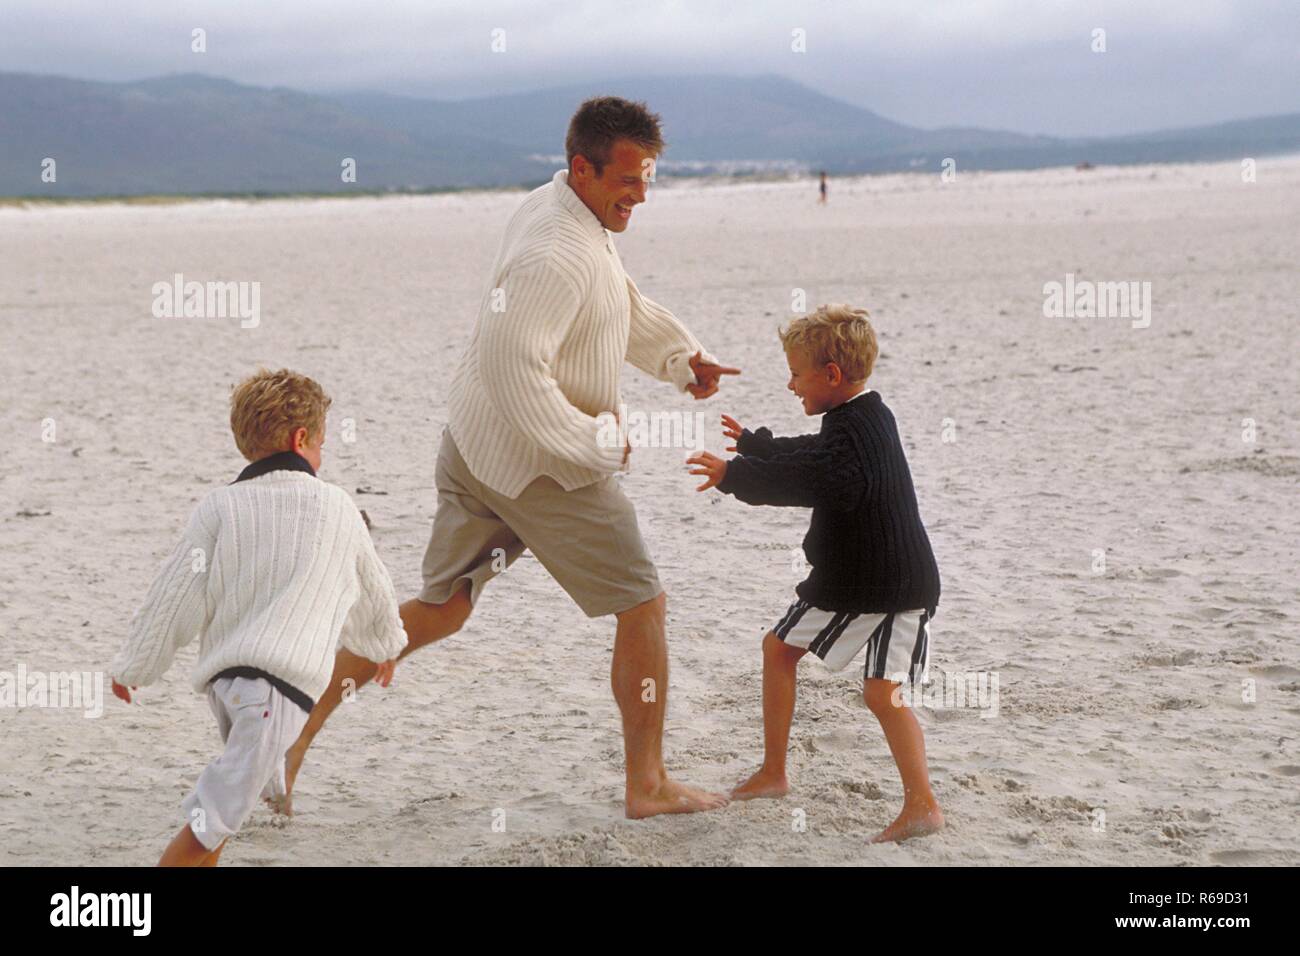 Halbfigur, Mann spielt mit seinen beiden 5-7 Jahre alten blonden Soehnen barfuss am Strand Stock Photo